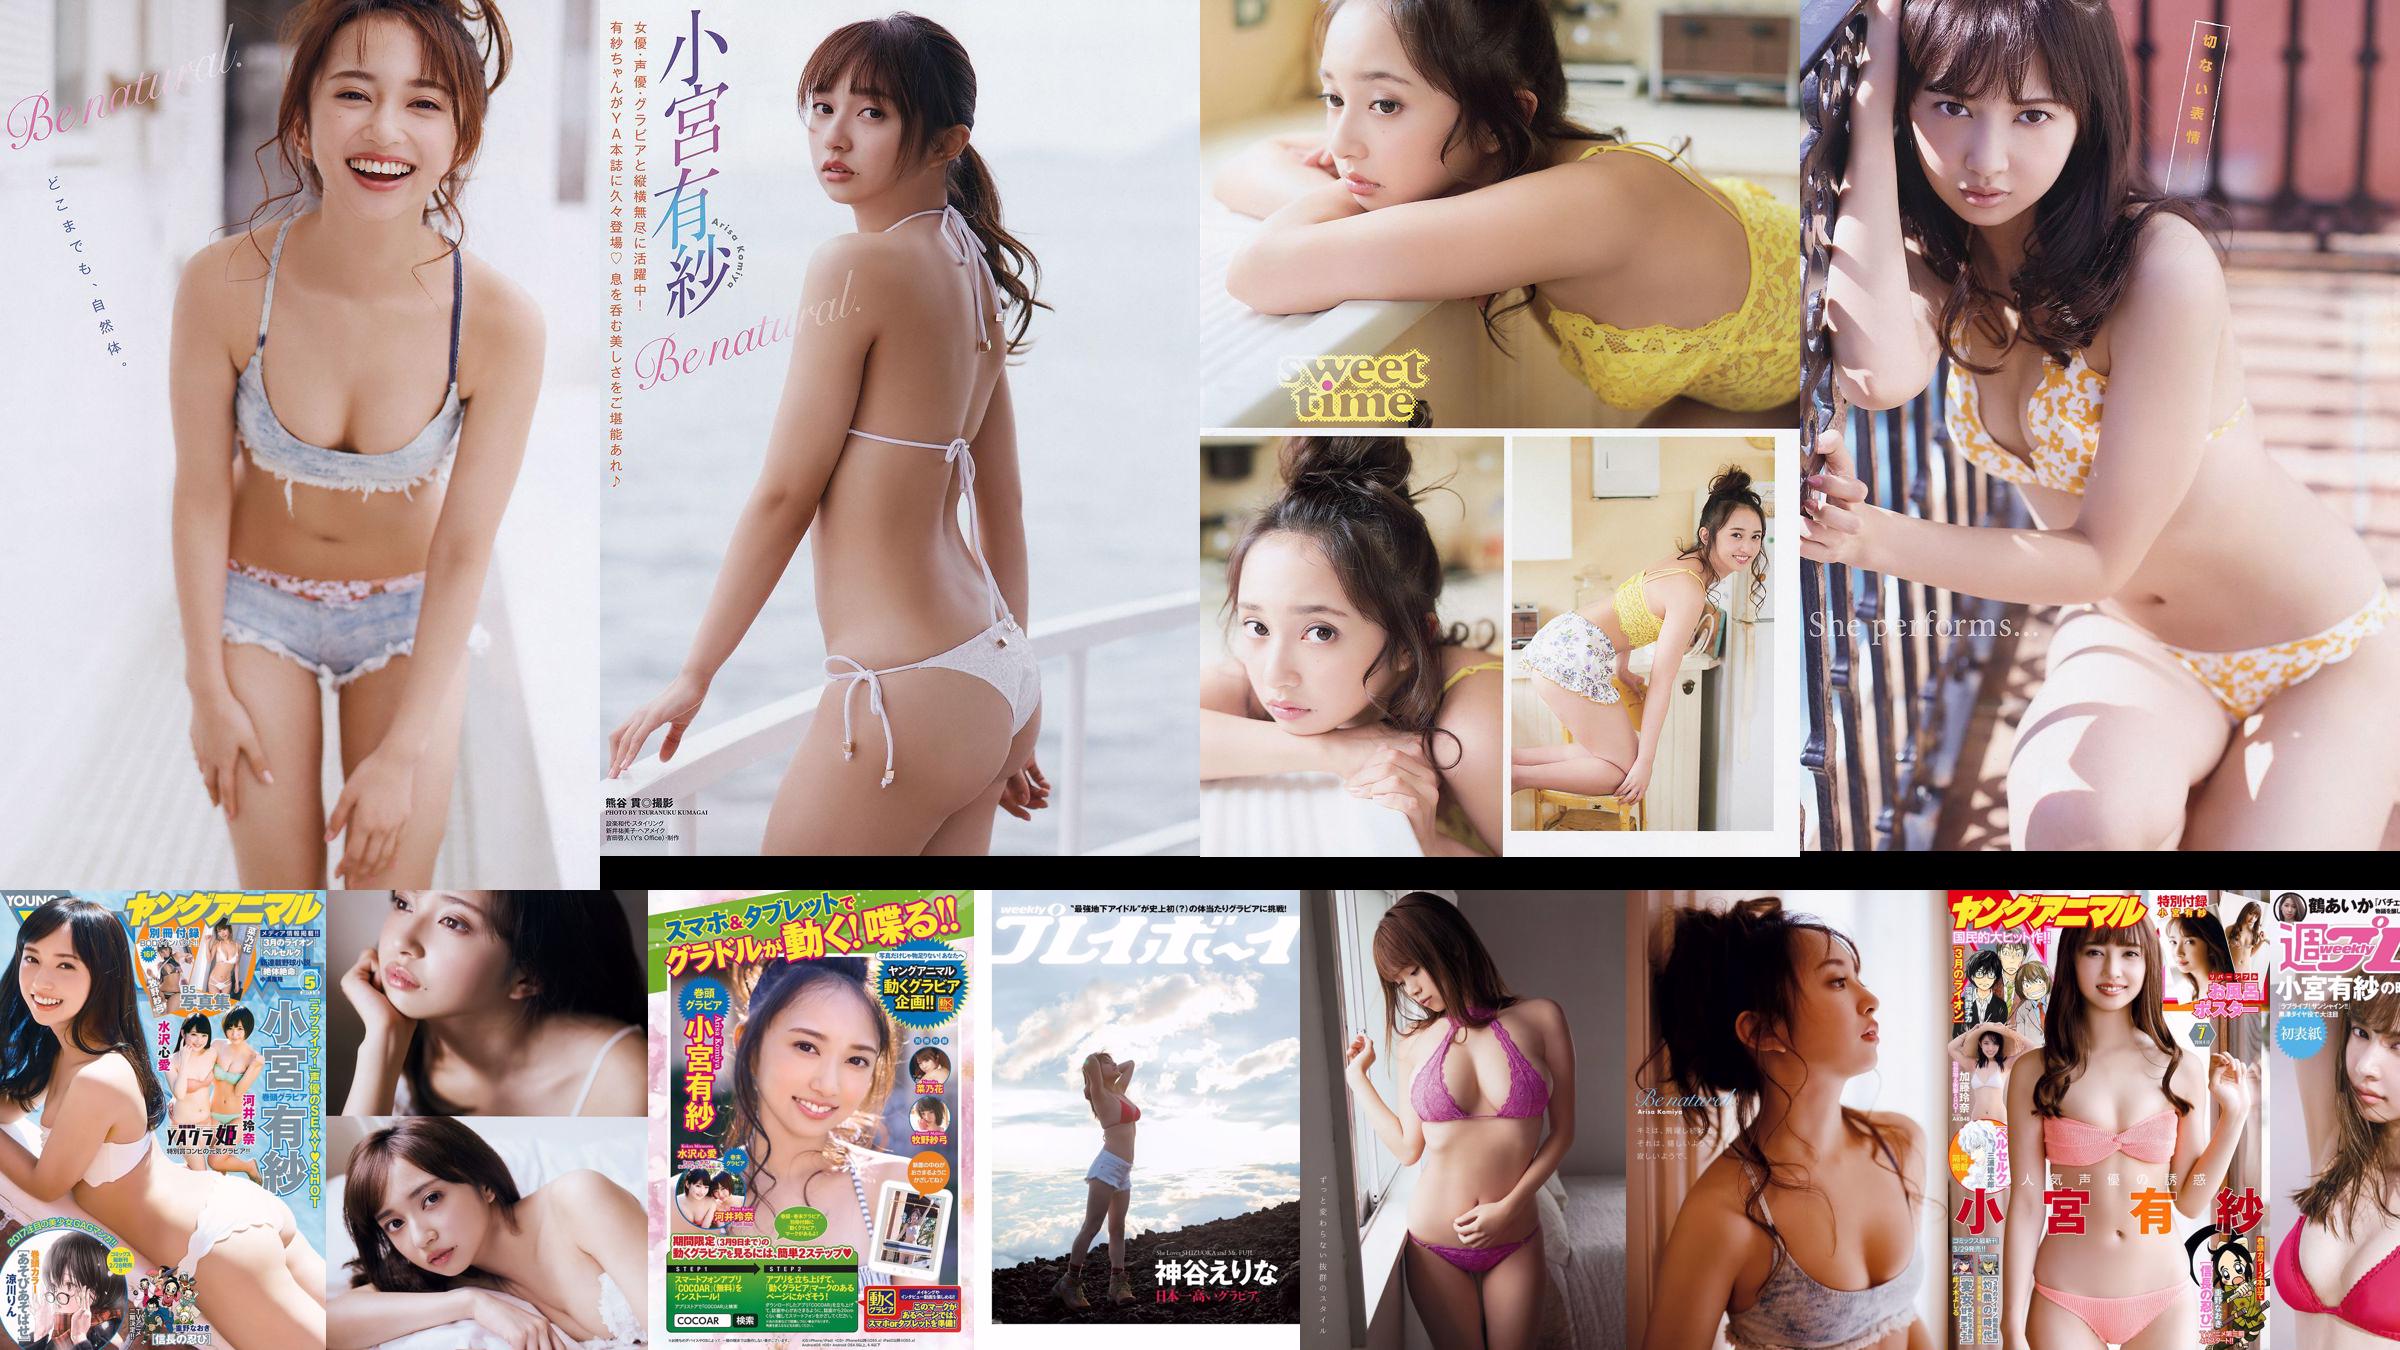 Arisa Komiya Rena Kato [Young Animal] 2018 nr 07 Photo Magazine No.def9d0 Strona 4